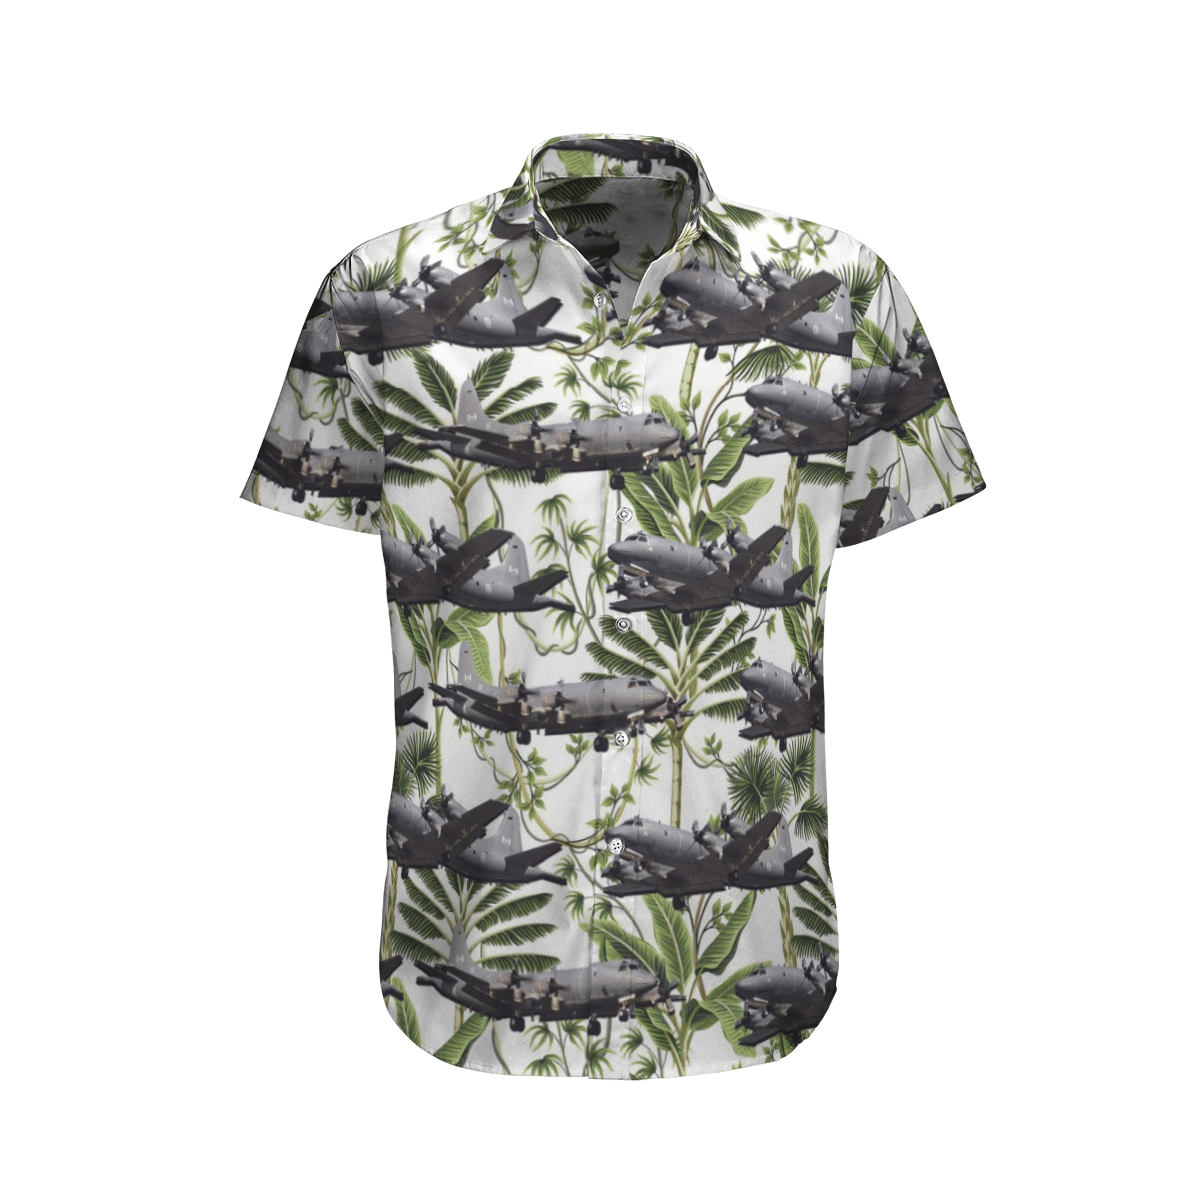 Beautiful Hawaiian shirts for you 225